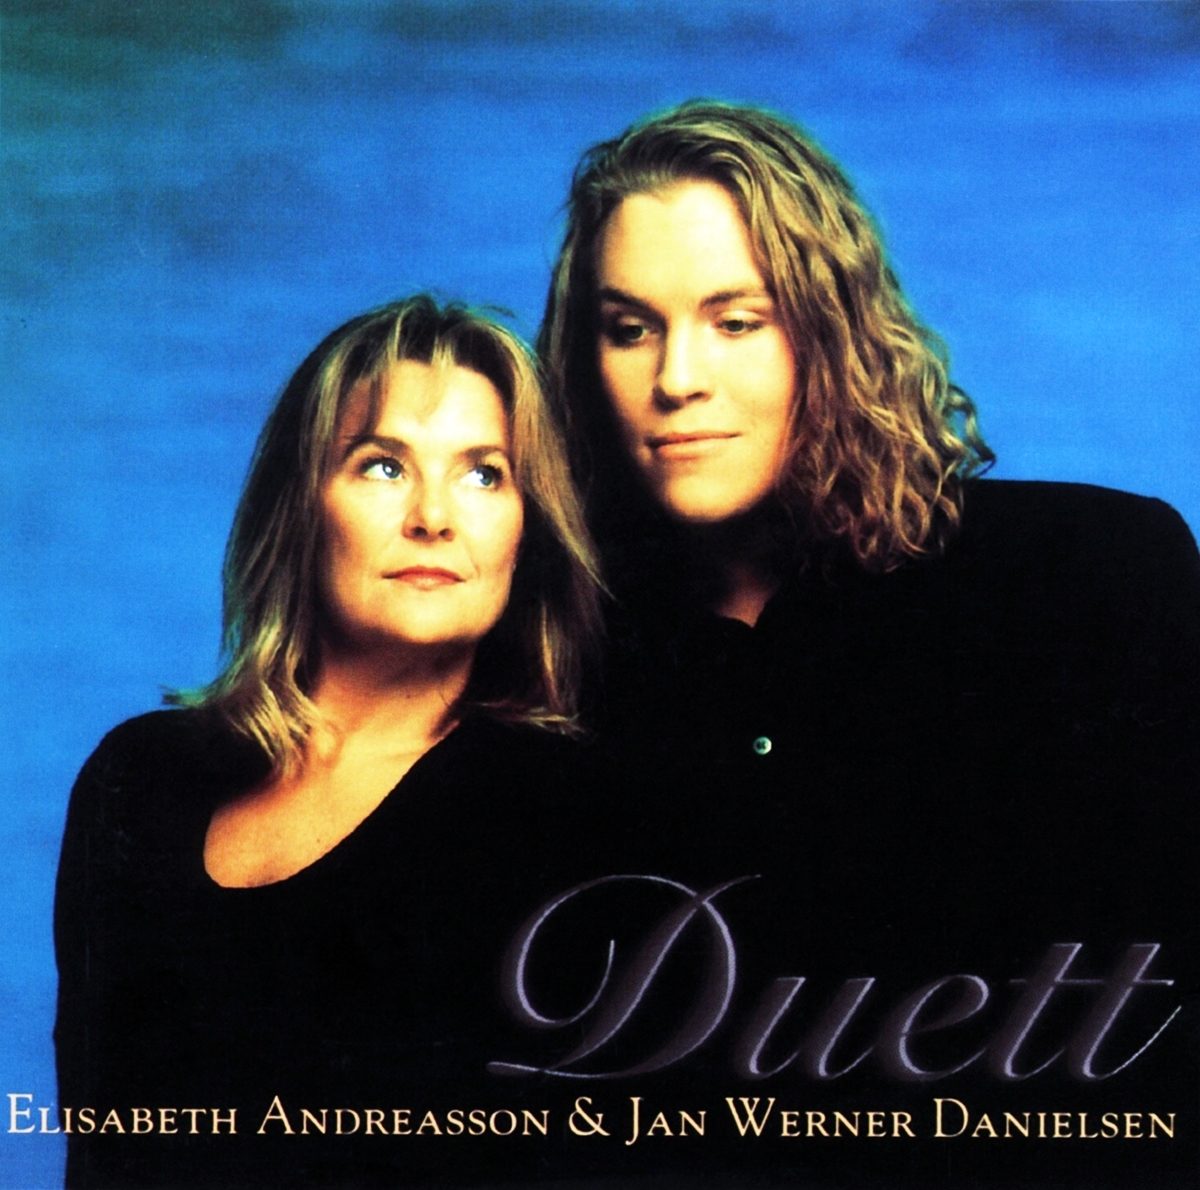 Elisabeth Andreasson & Jan Werner Danielsen